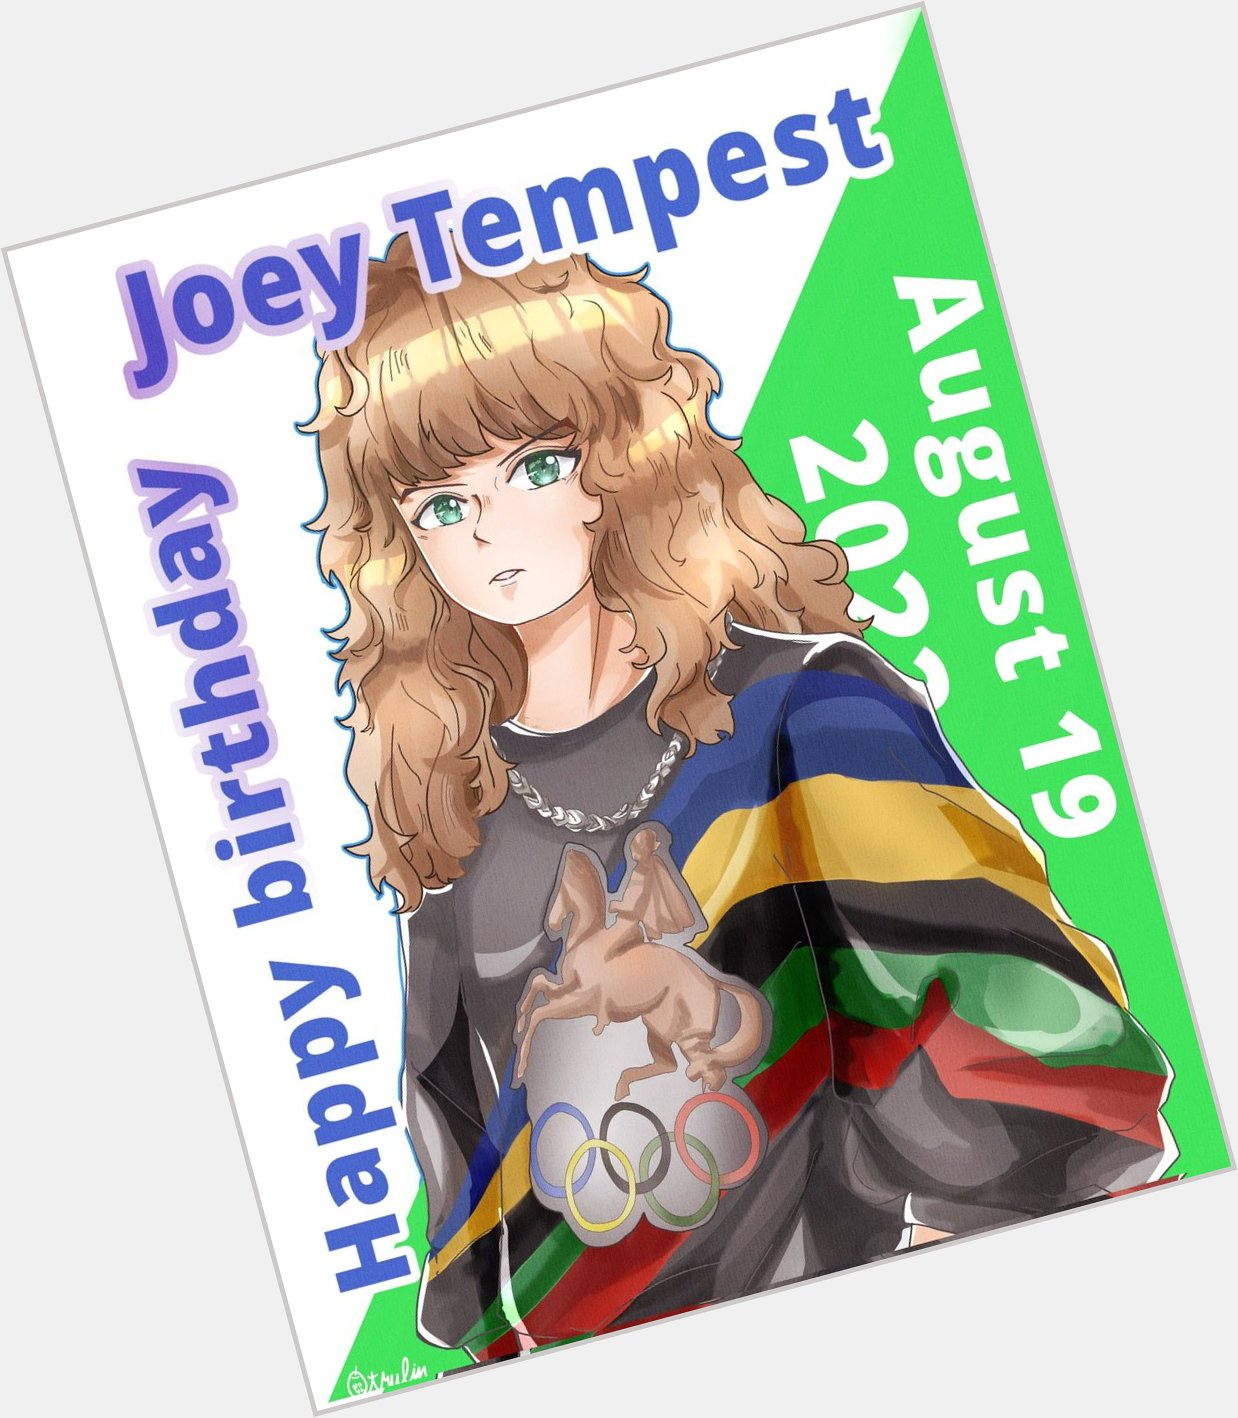 Happy birthday Joey Tempest   